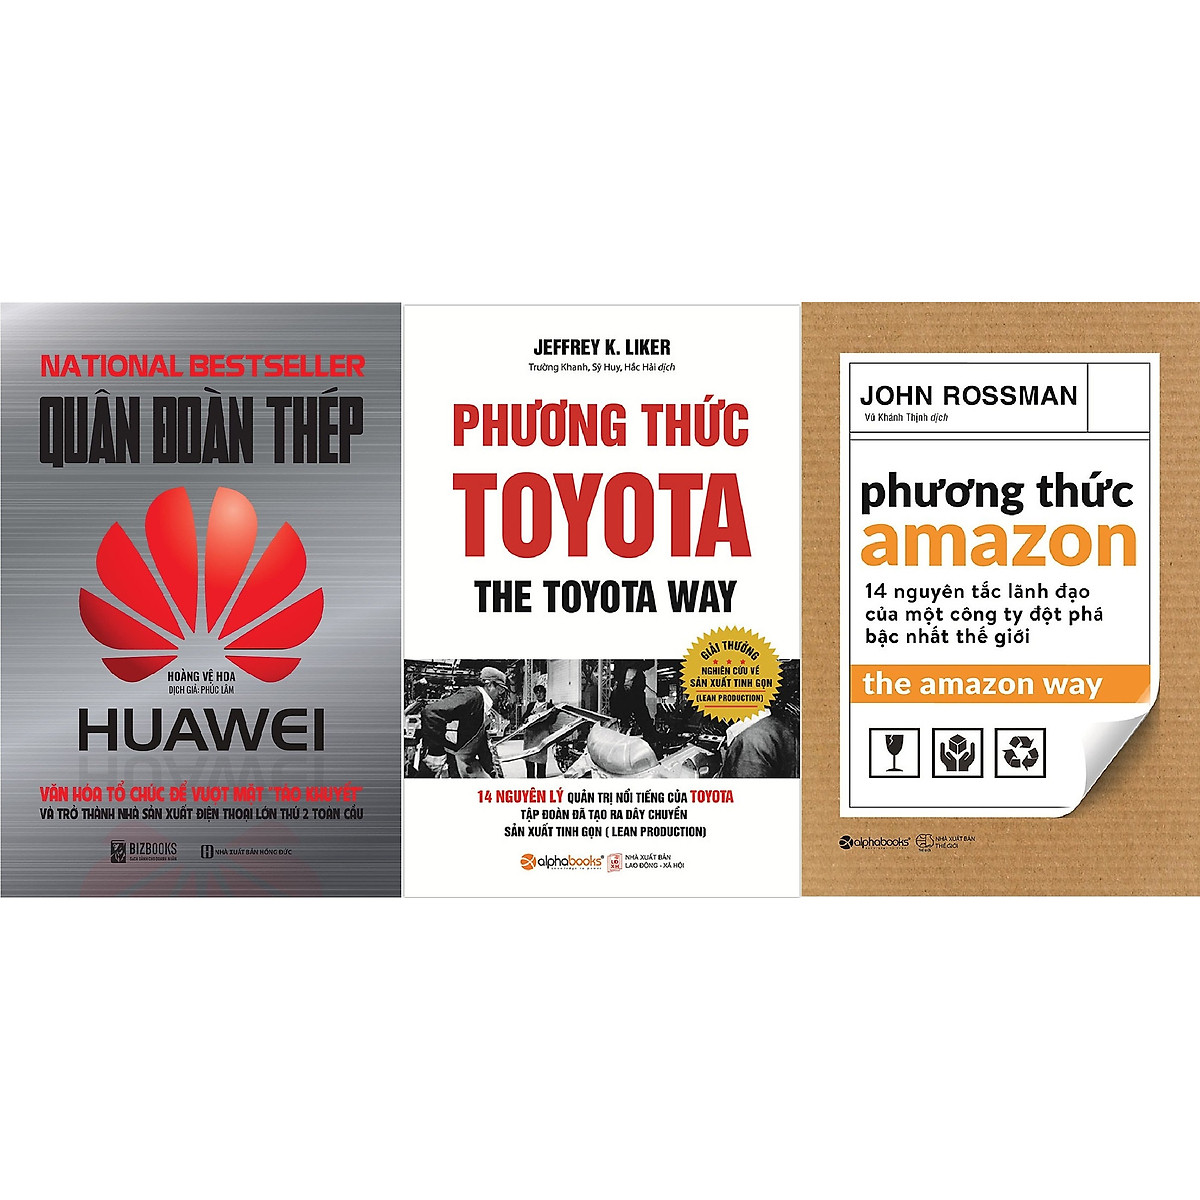 Bộ Sách Kinh Điển Dành Cho Các Nhà Quản Trị - Tham Khảo Những Mô Hình Quản Trị Ưu Việt Của Các Công Ty Đột Phá Thế Giới ( Quân Đoàn Thép Huawei + Phương Thức Toyota + Phương Thức Amazon ) tặng kèm bookmark Sáng Tạo